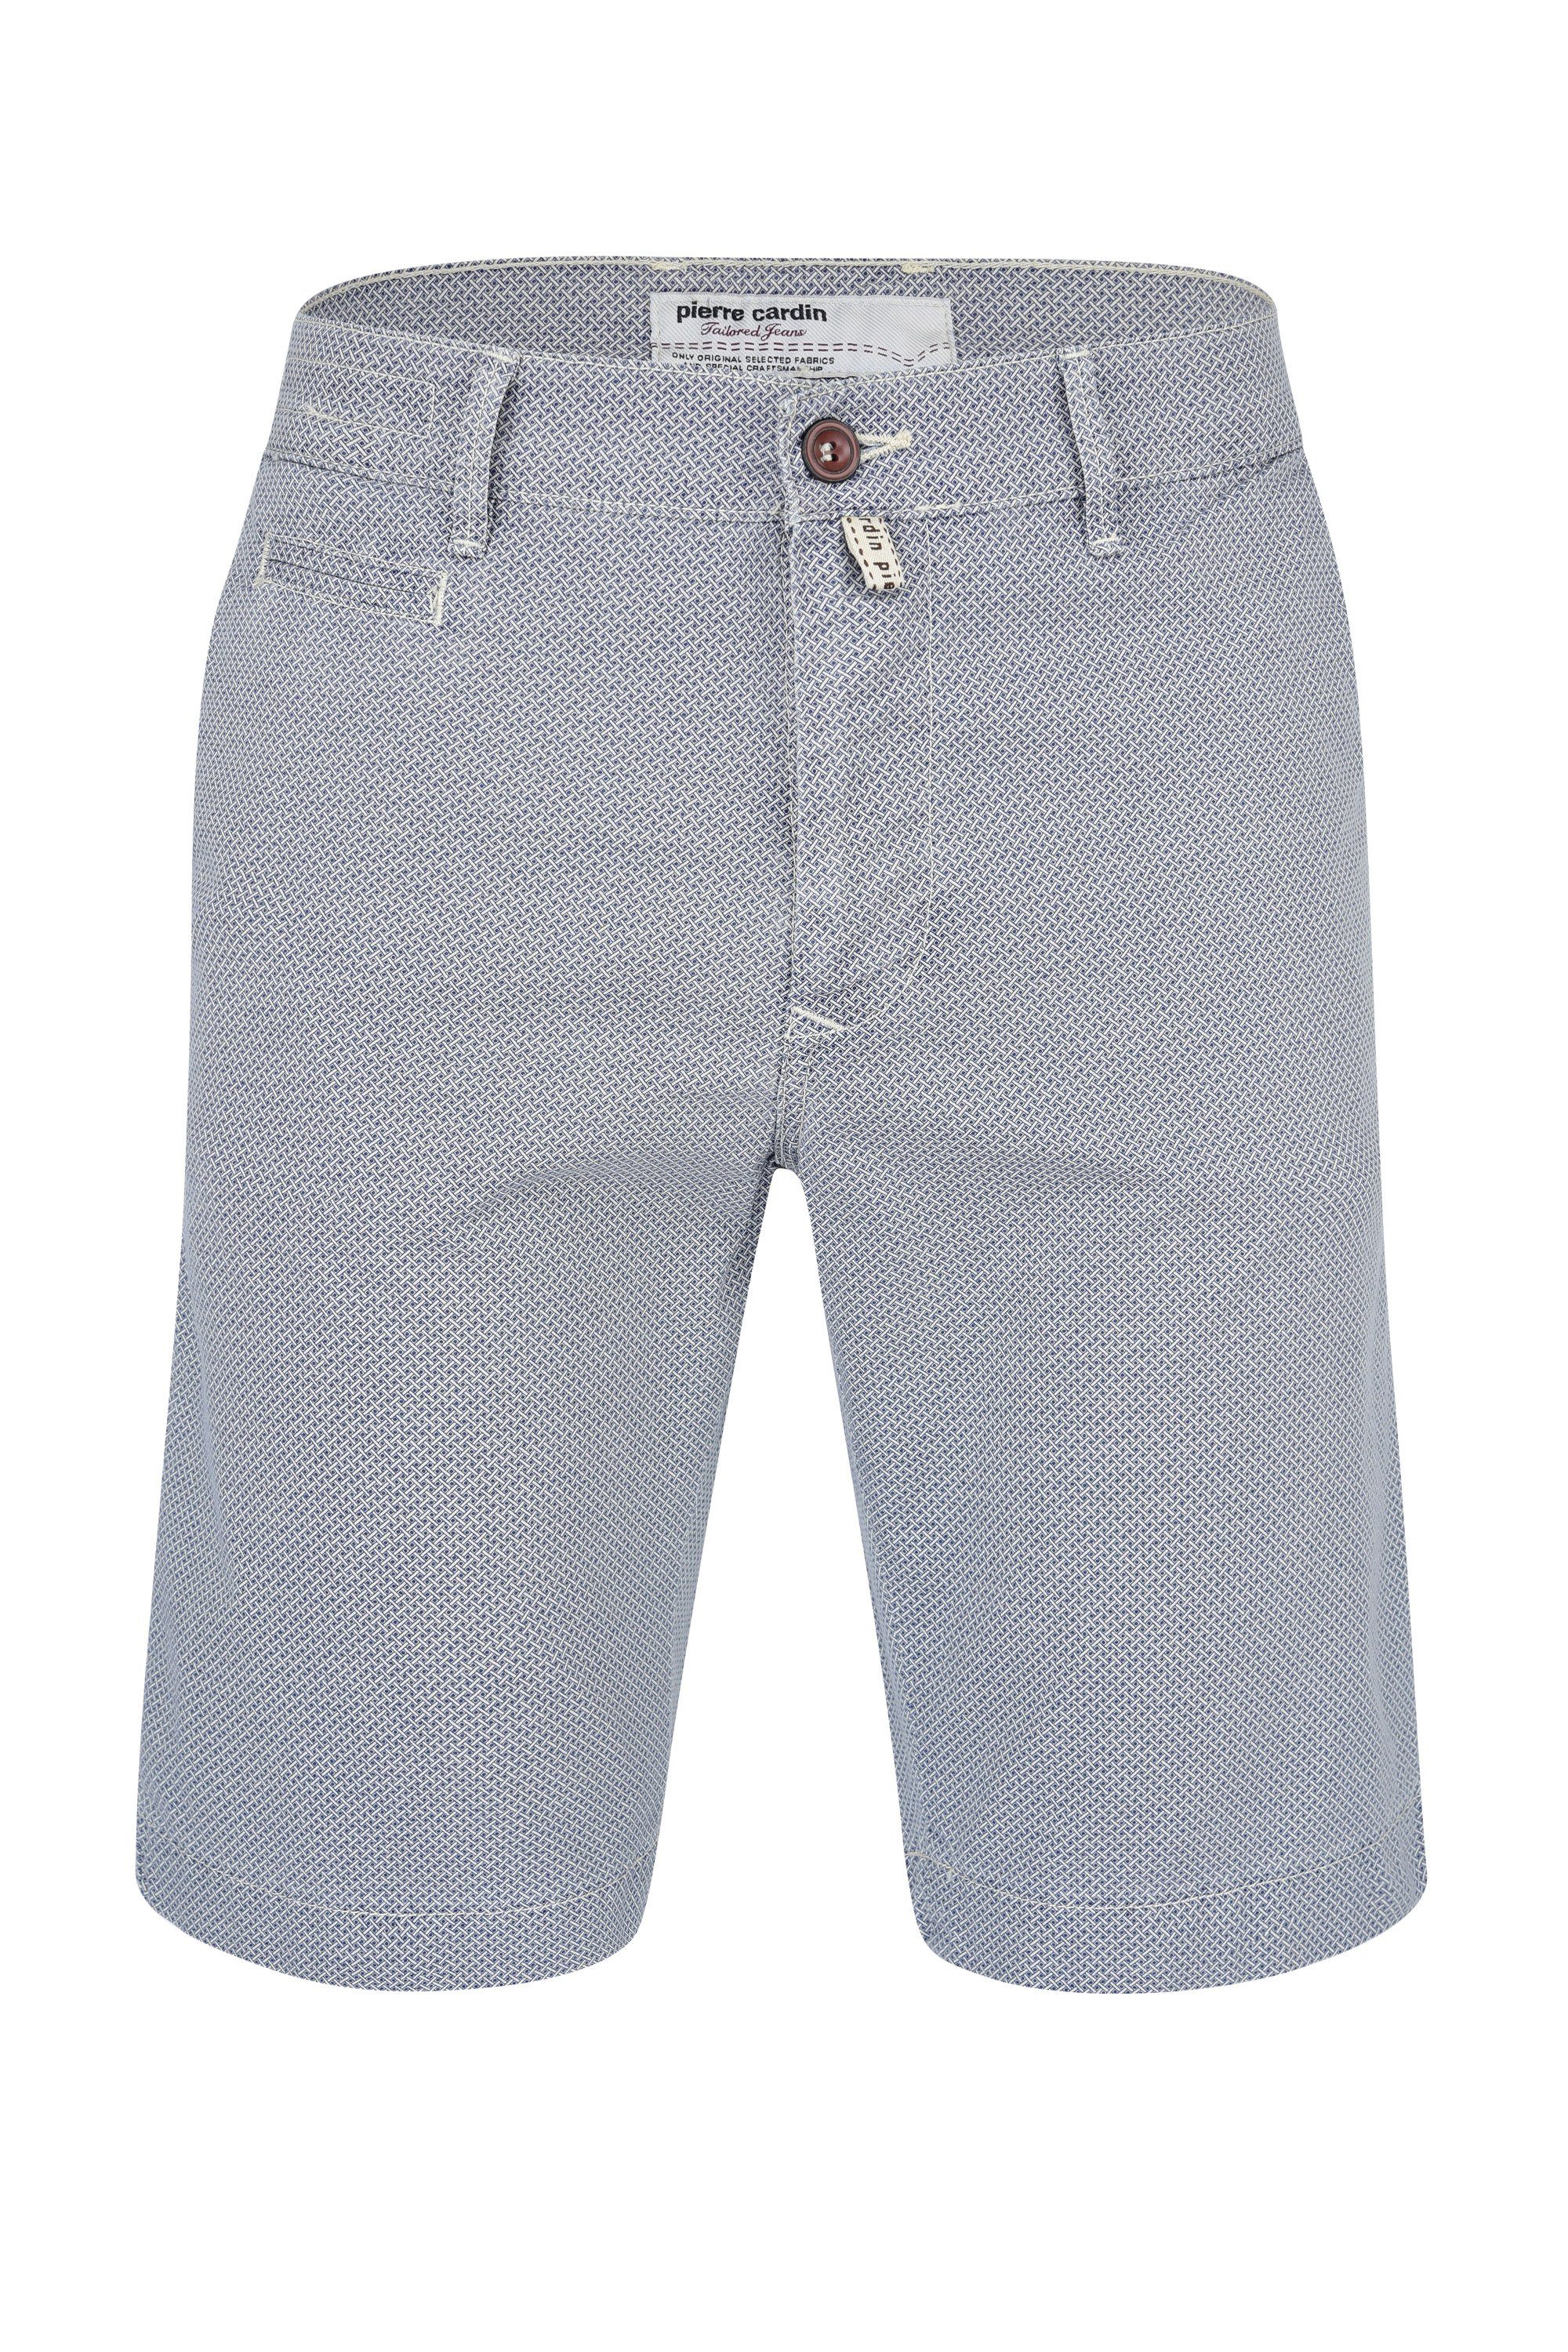 Pierre Cardin 5-Pocket-Jeans PIERRE CARDIN LYON SHORTS mixed grey blue 3465 2060.27 | Jeans